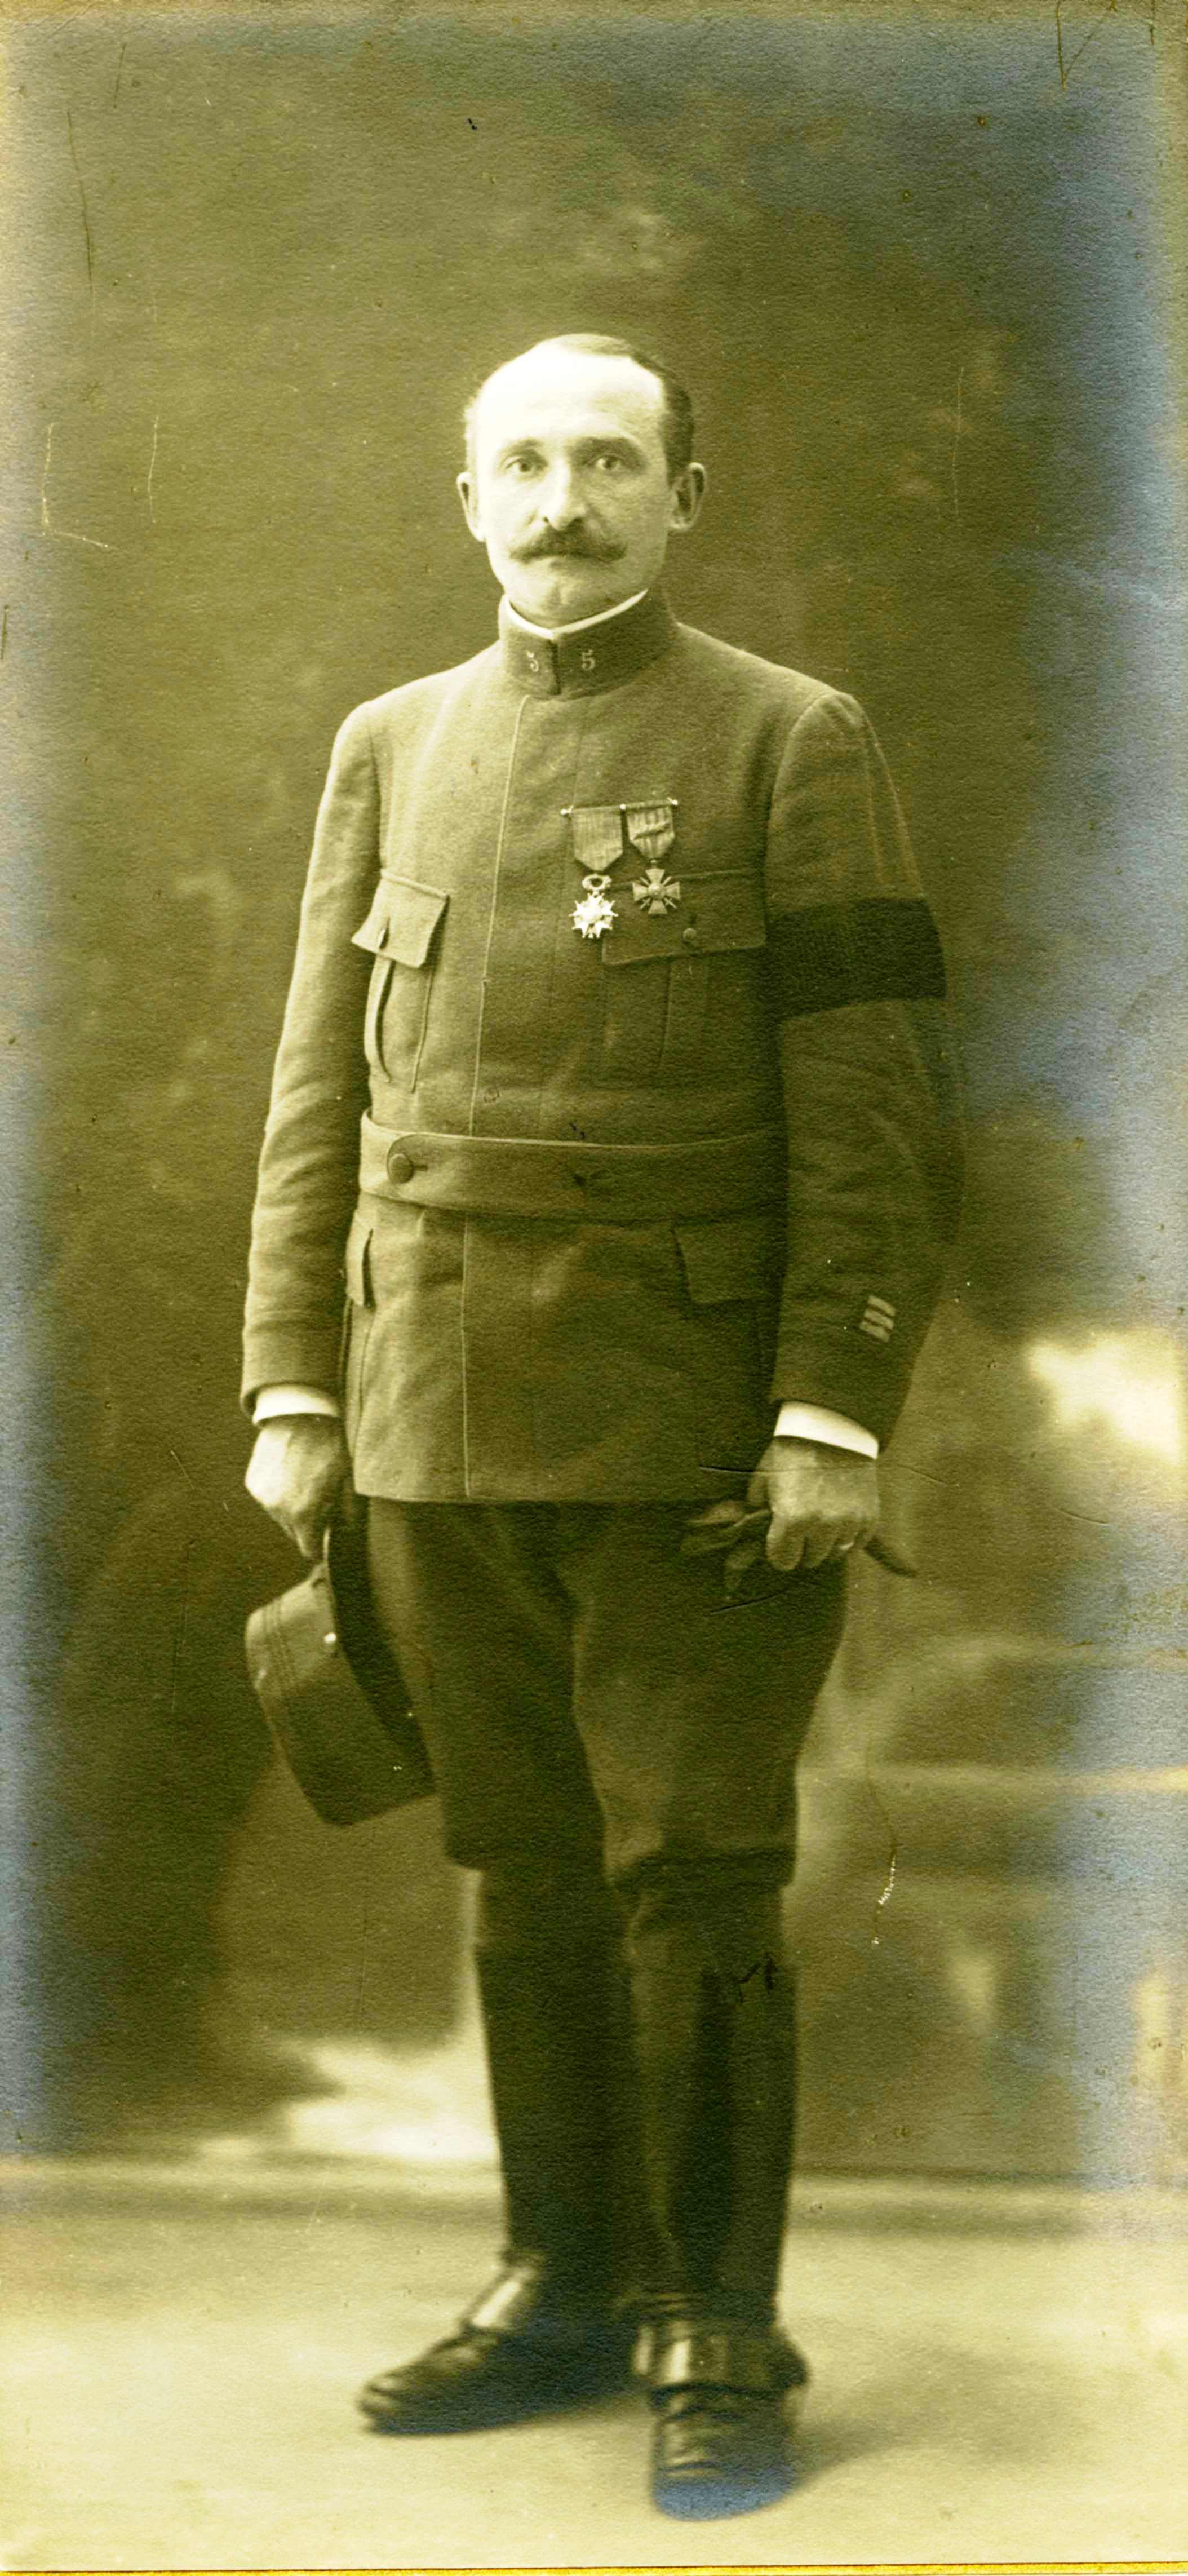 1916-1-Georges Cuny-007 Corrigee.jpg